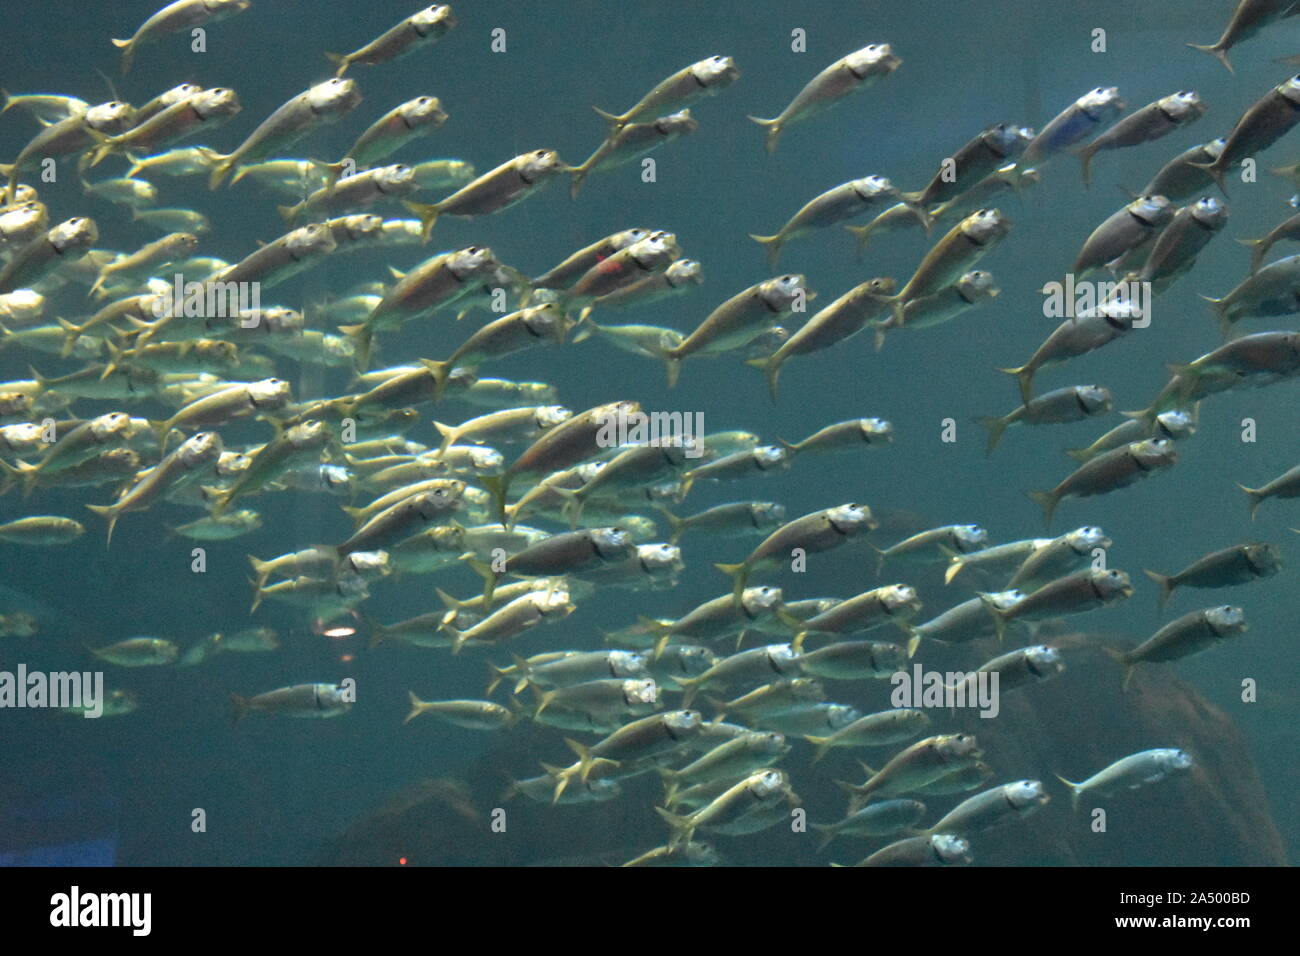 0047 Fish Swimming Underwater..JPG Stock Photo